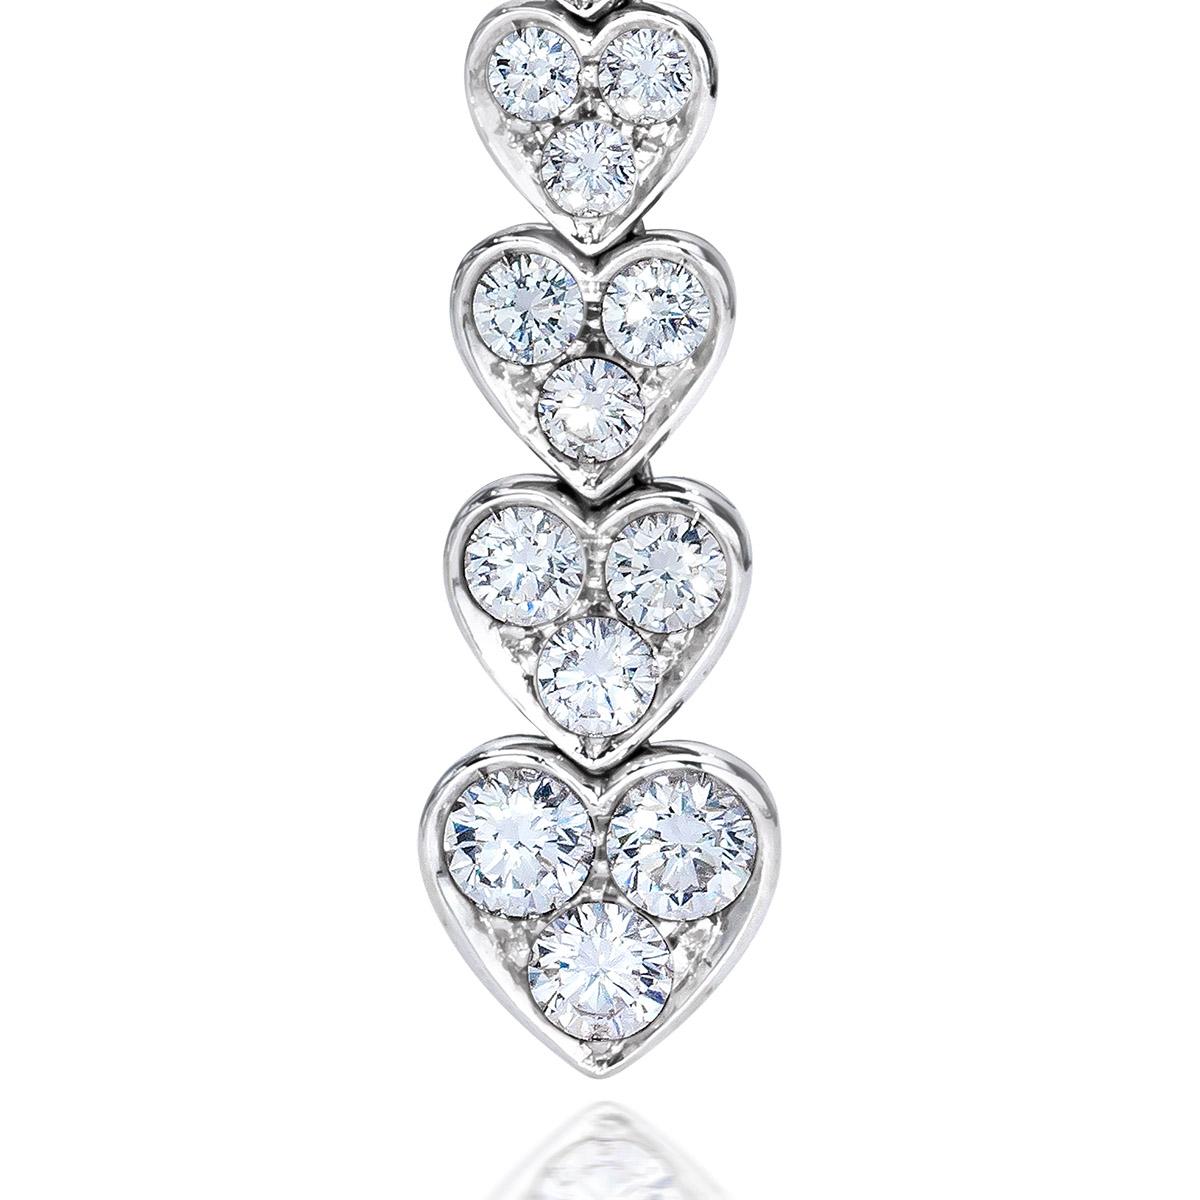 Diese wunderschönen Diamant-Herztropfen wurden von dem renommierten italienischen Designer PIcchiotti handgefertigt. Aus 18kt Weißgold, diese 3